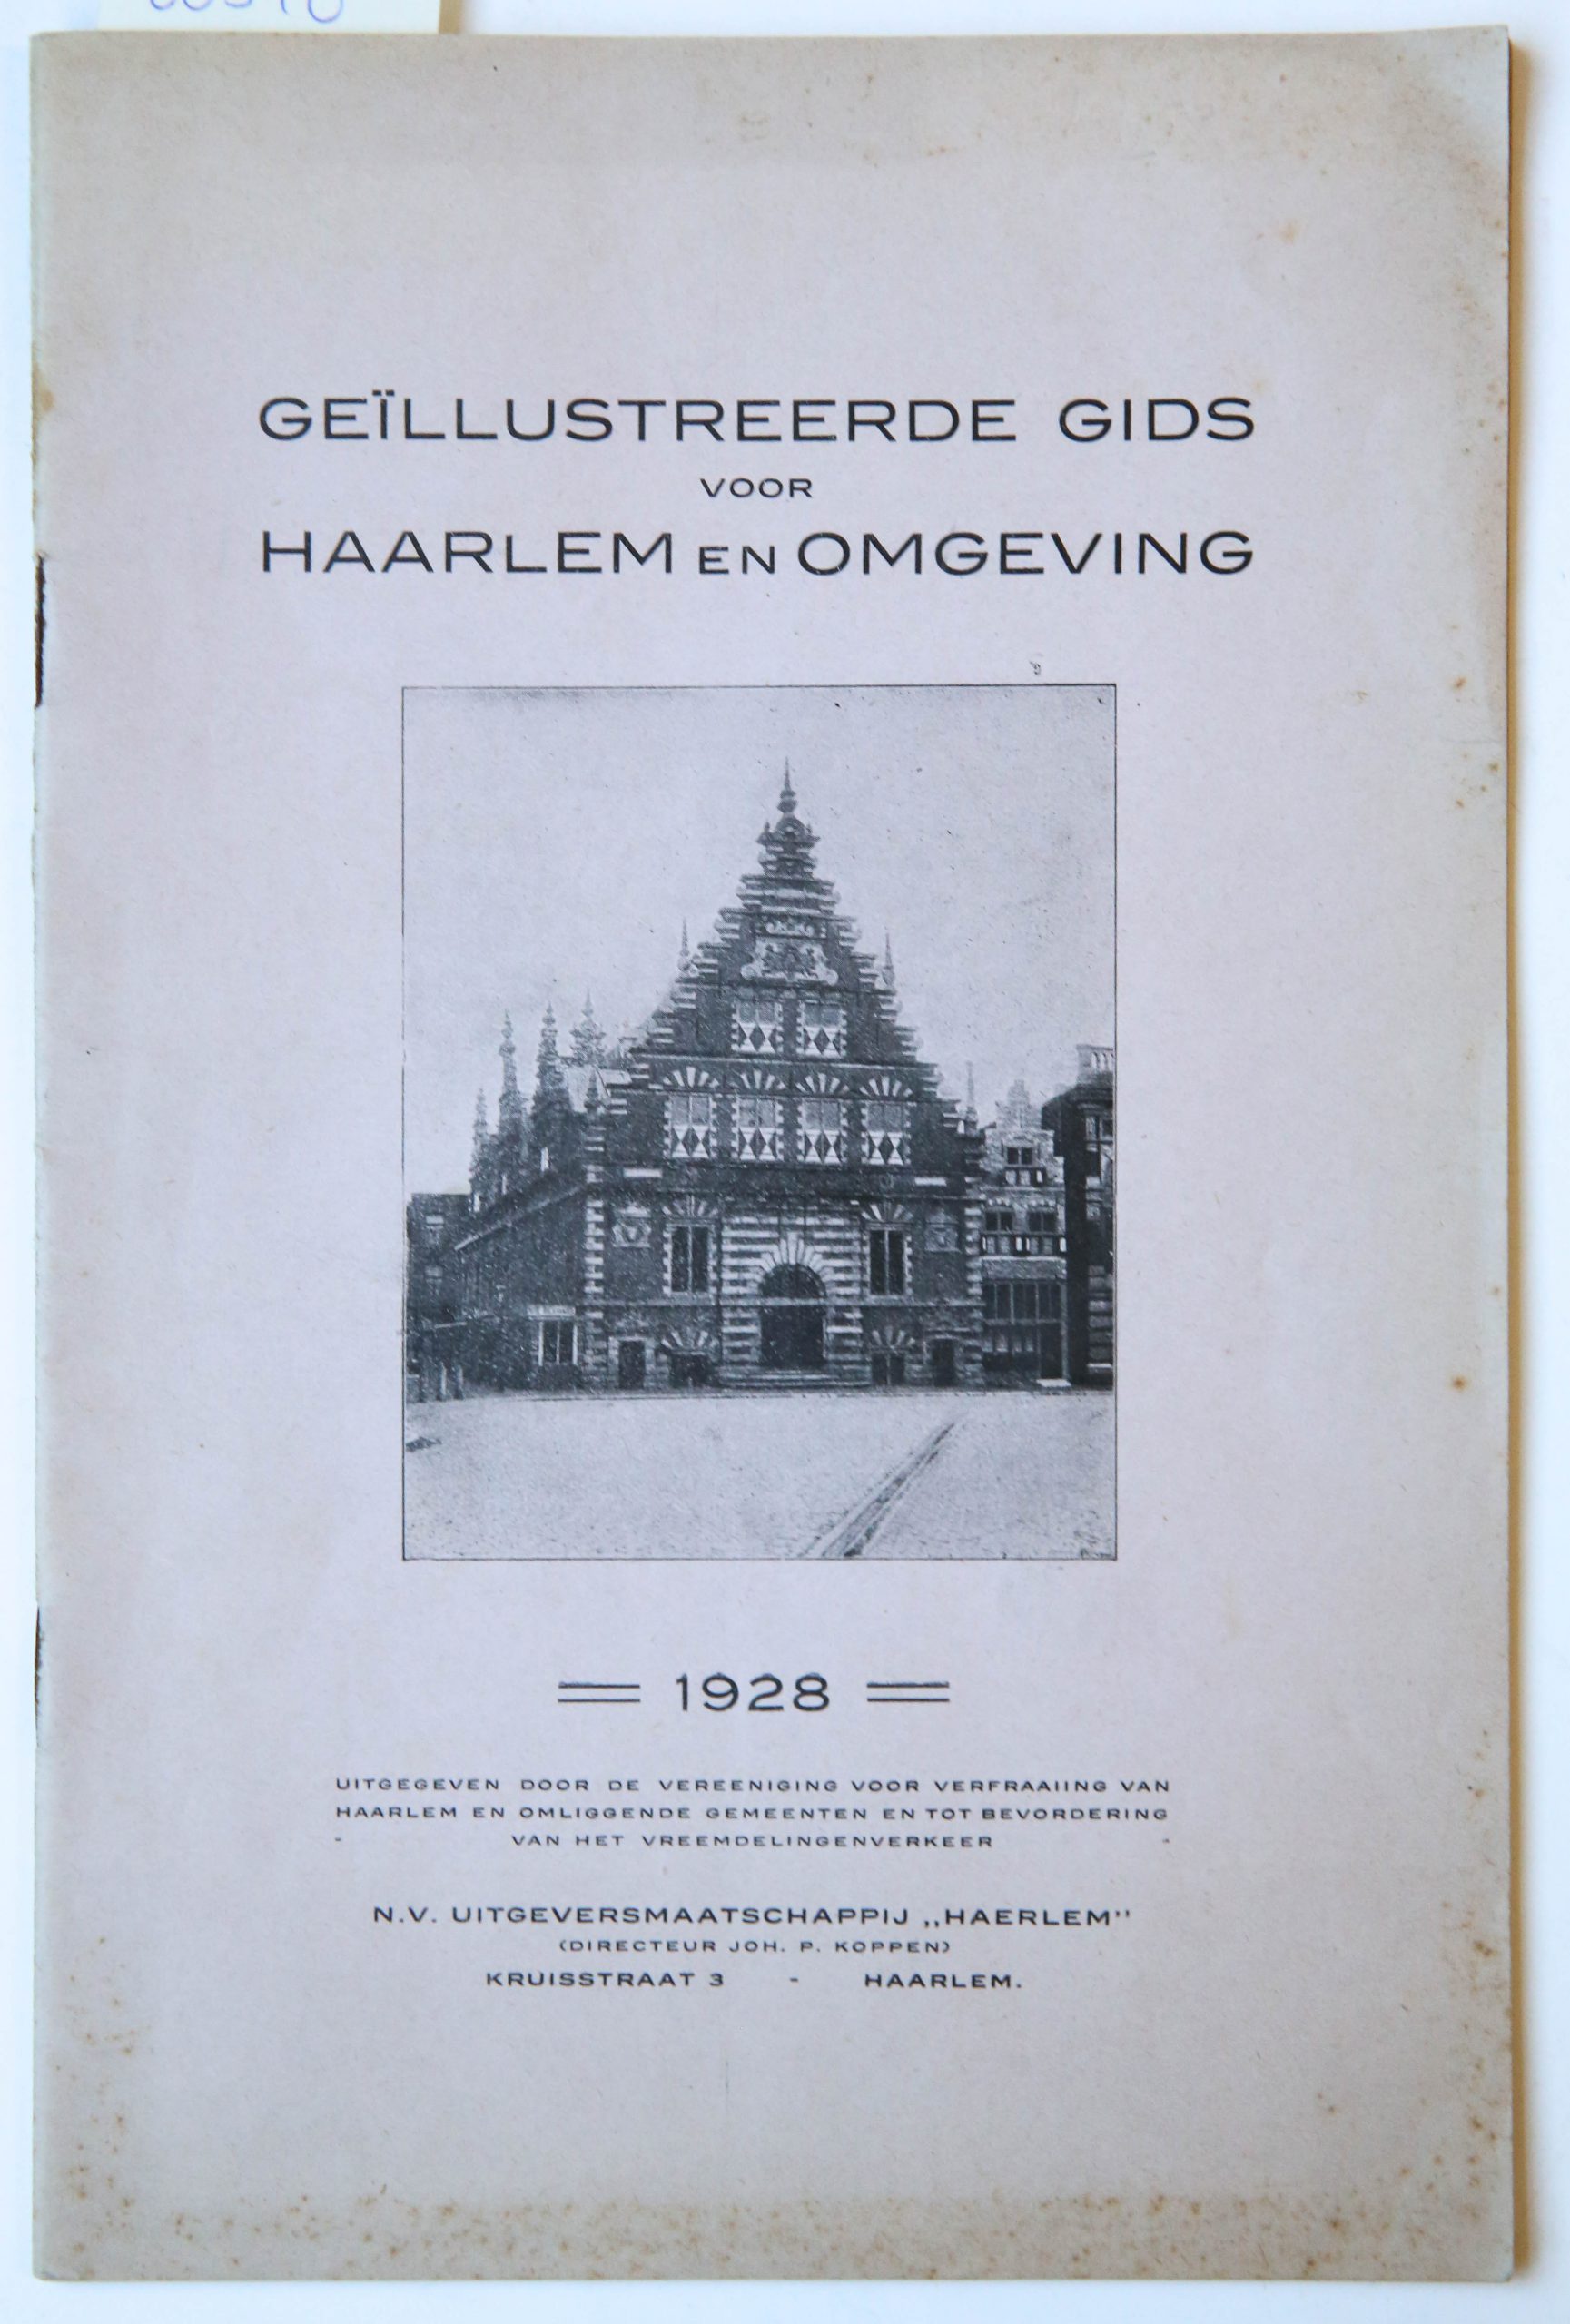 Geïllustreerde gids voor Haarlem en omgeving, uitgegeven door de vereeniging voor verfraaiing van haarlem en omliggende gemeenten en tot bevordering van het Vreemdelingenverkeer, N.V. Uitgeversmaatschappij 